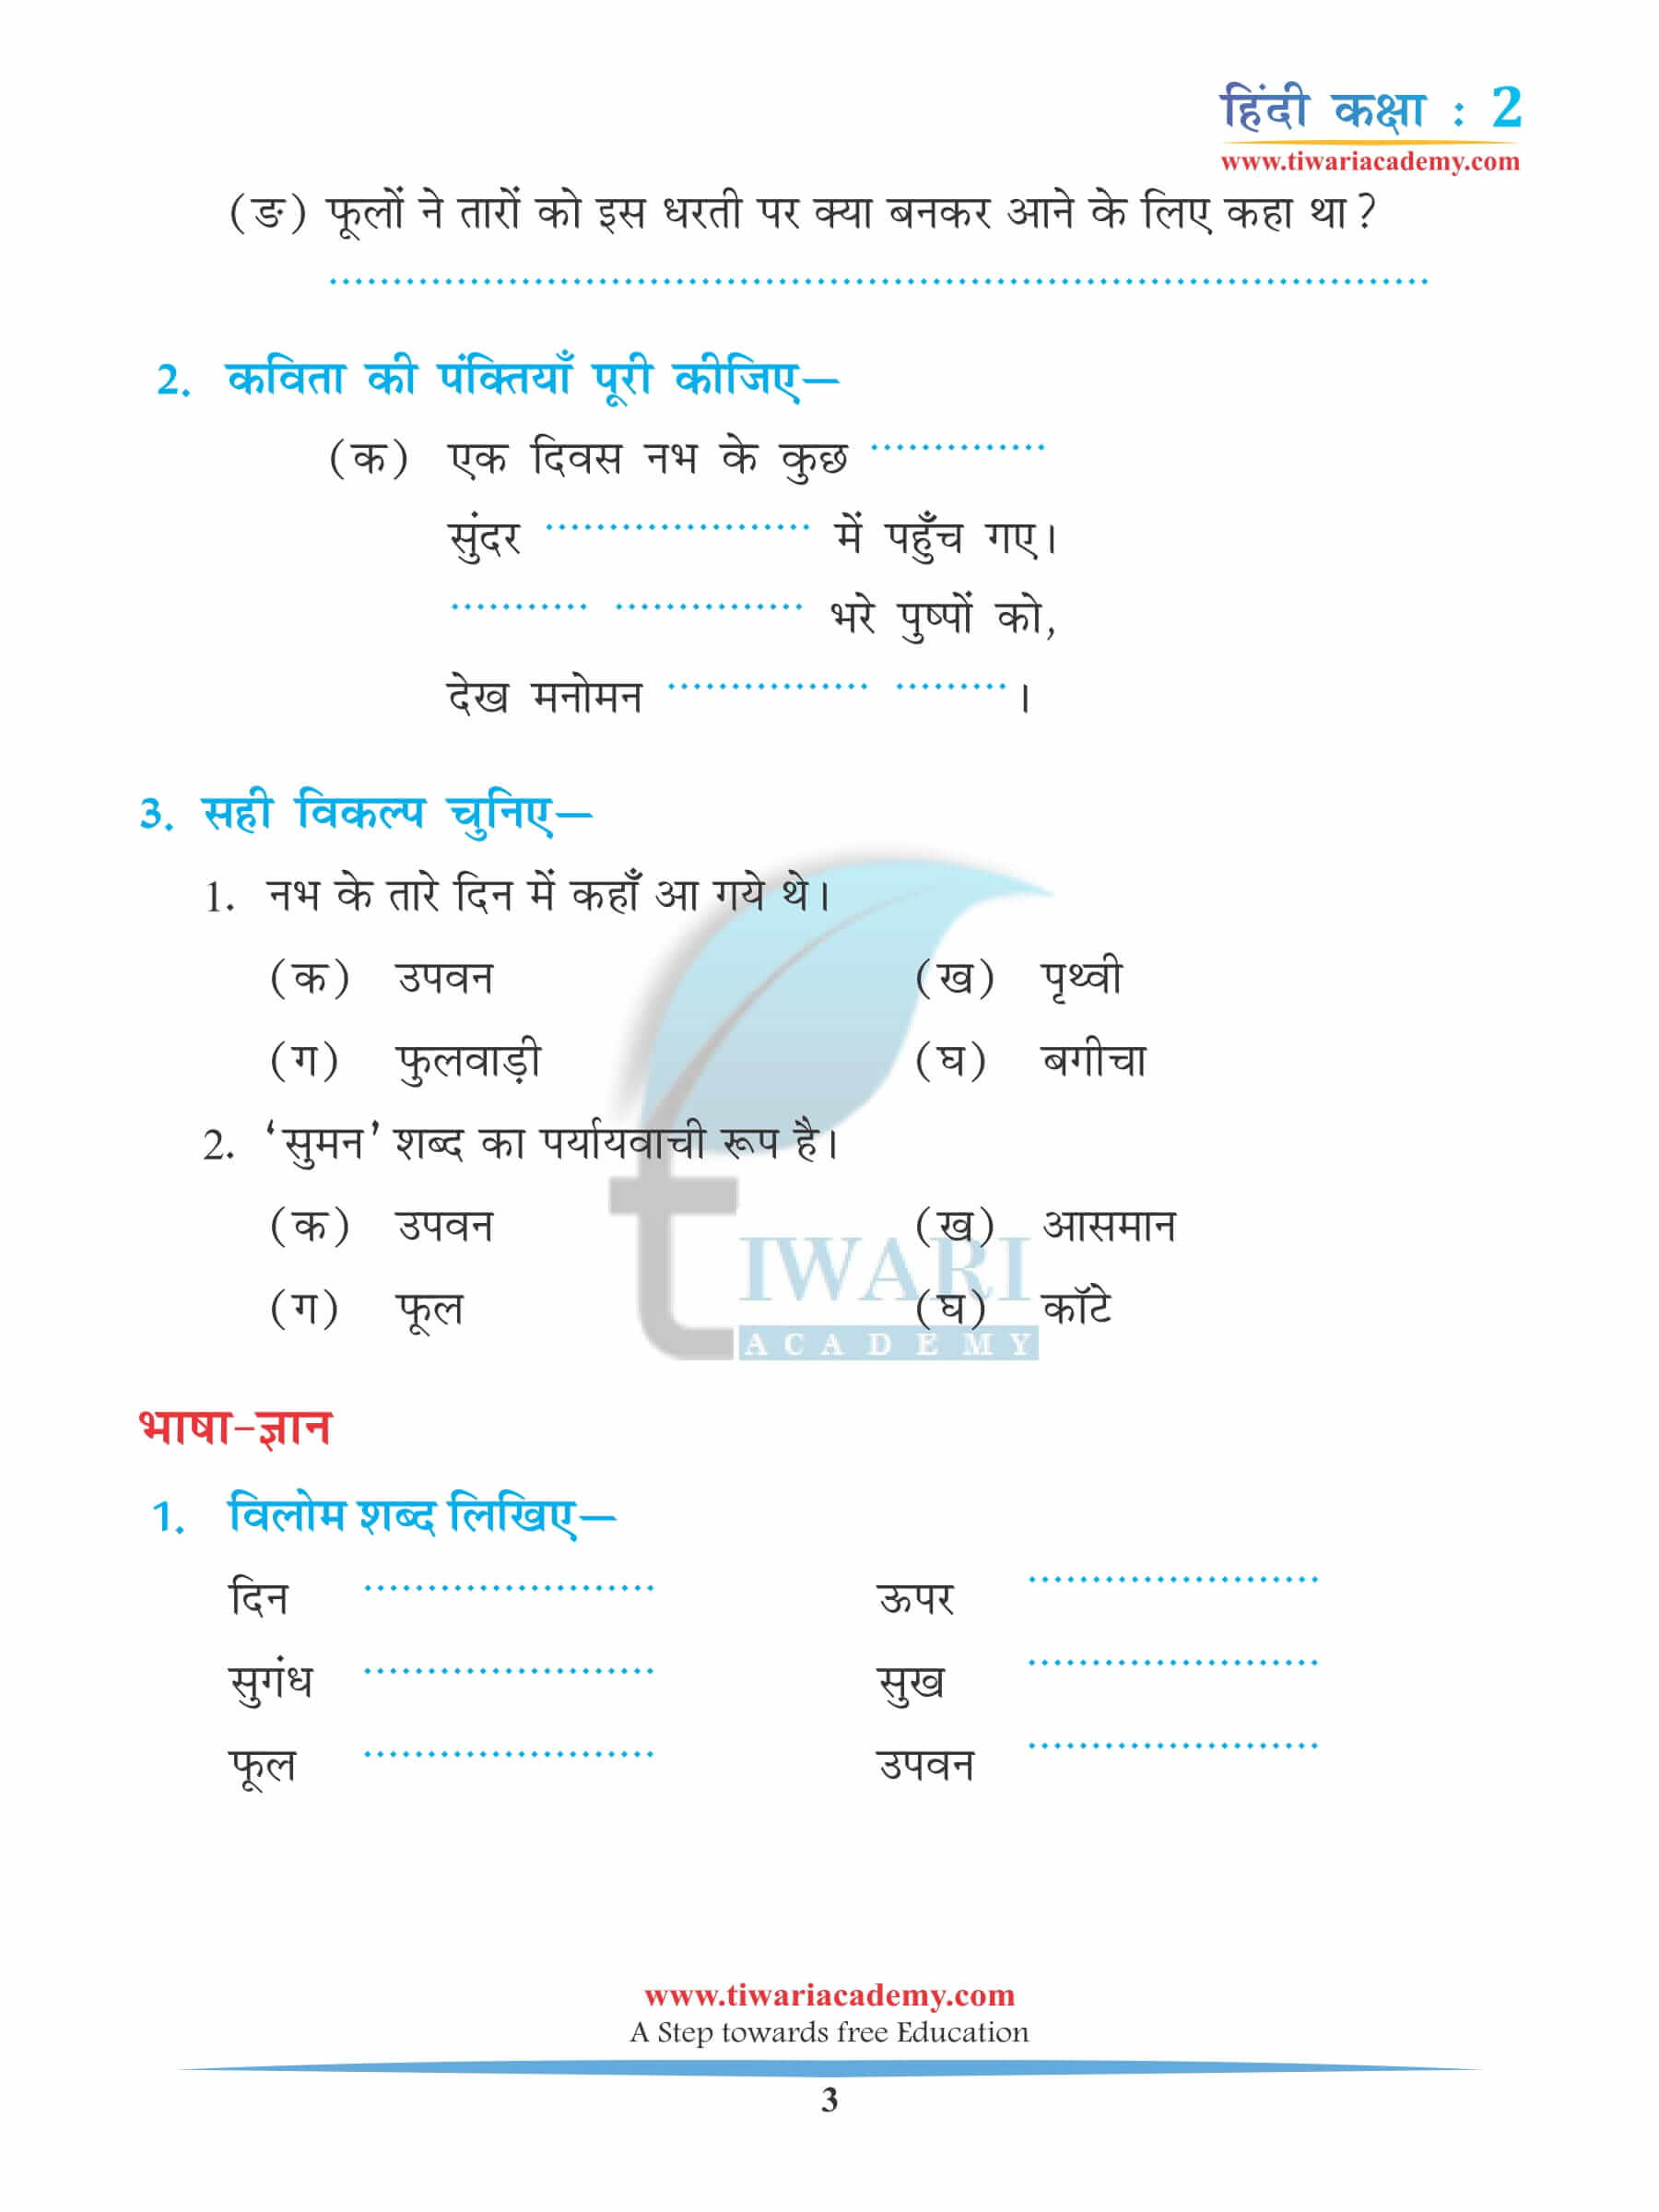 कक्षा 2 हिंदी अध्याय 5 अभ्यास